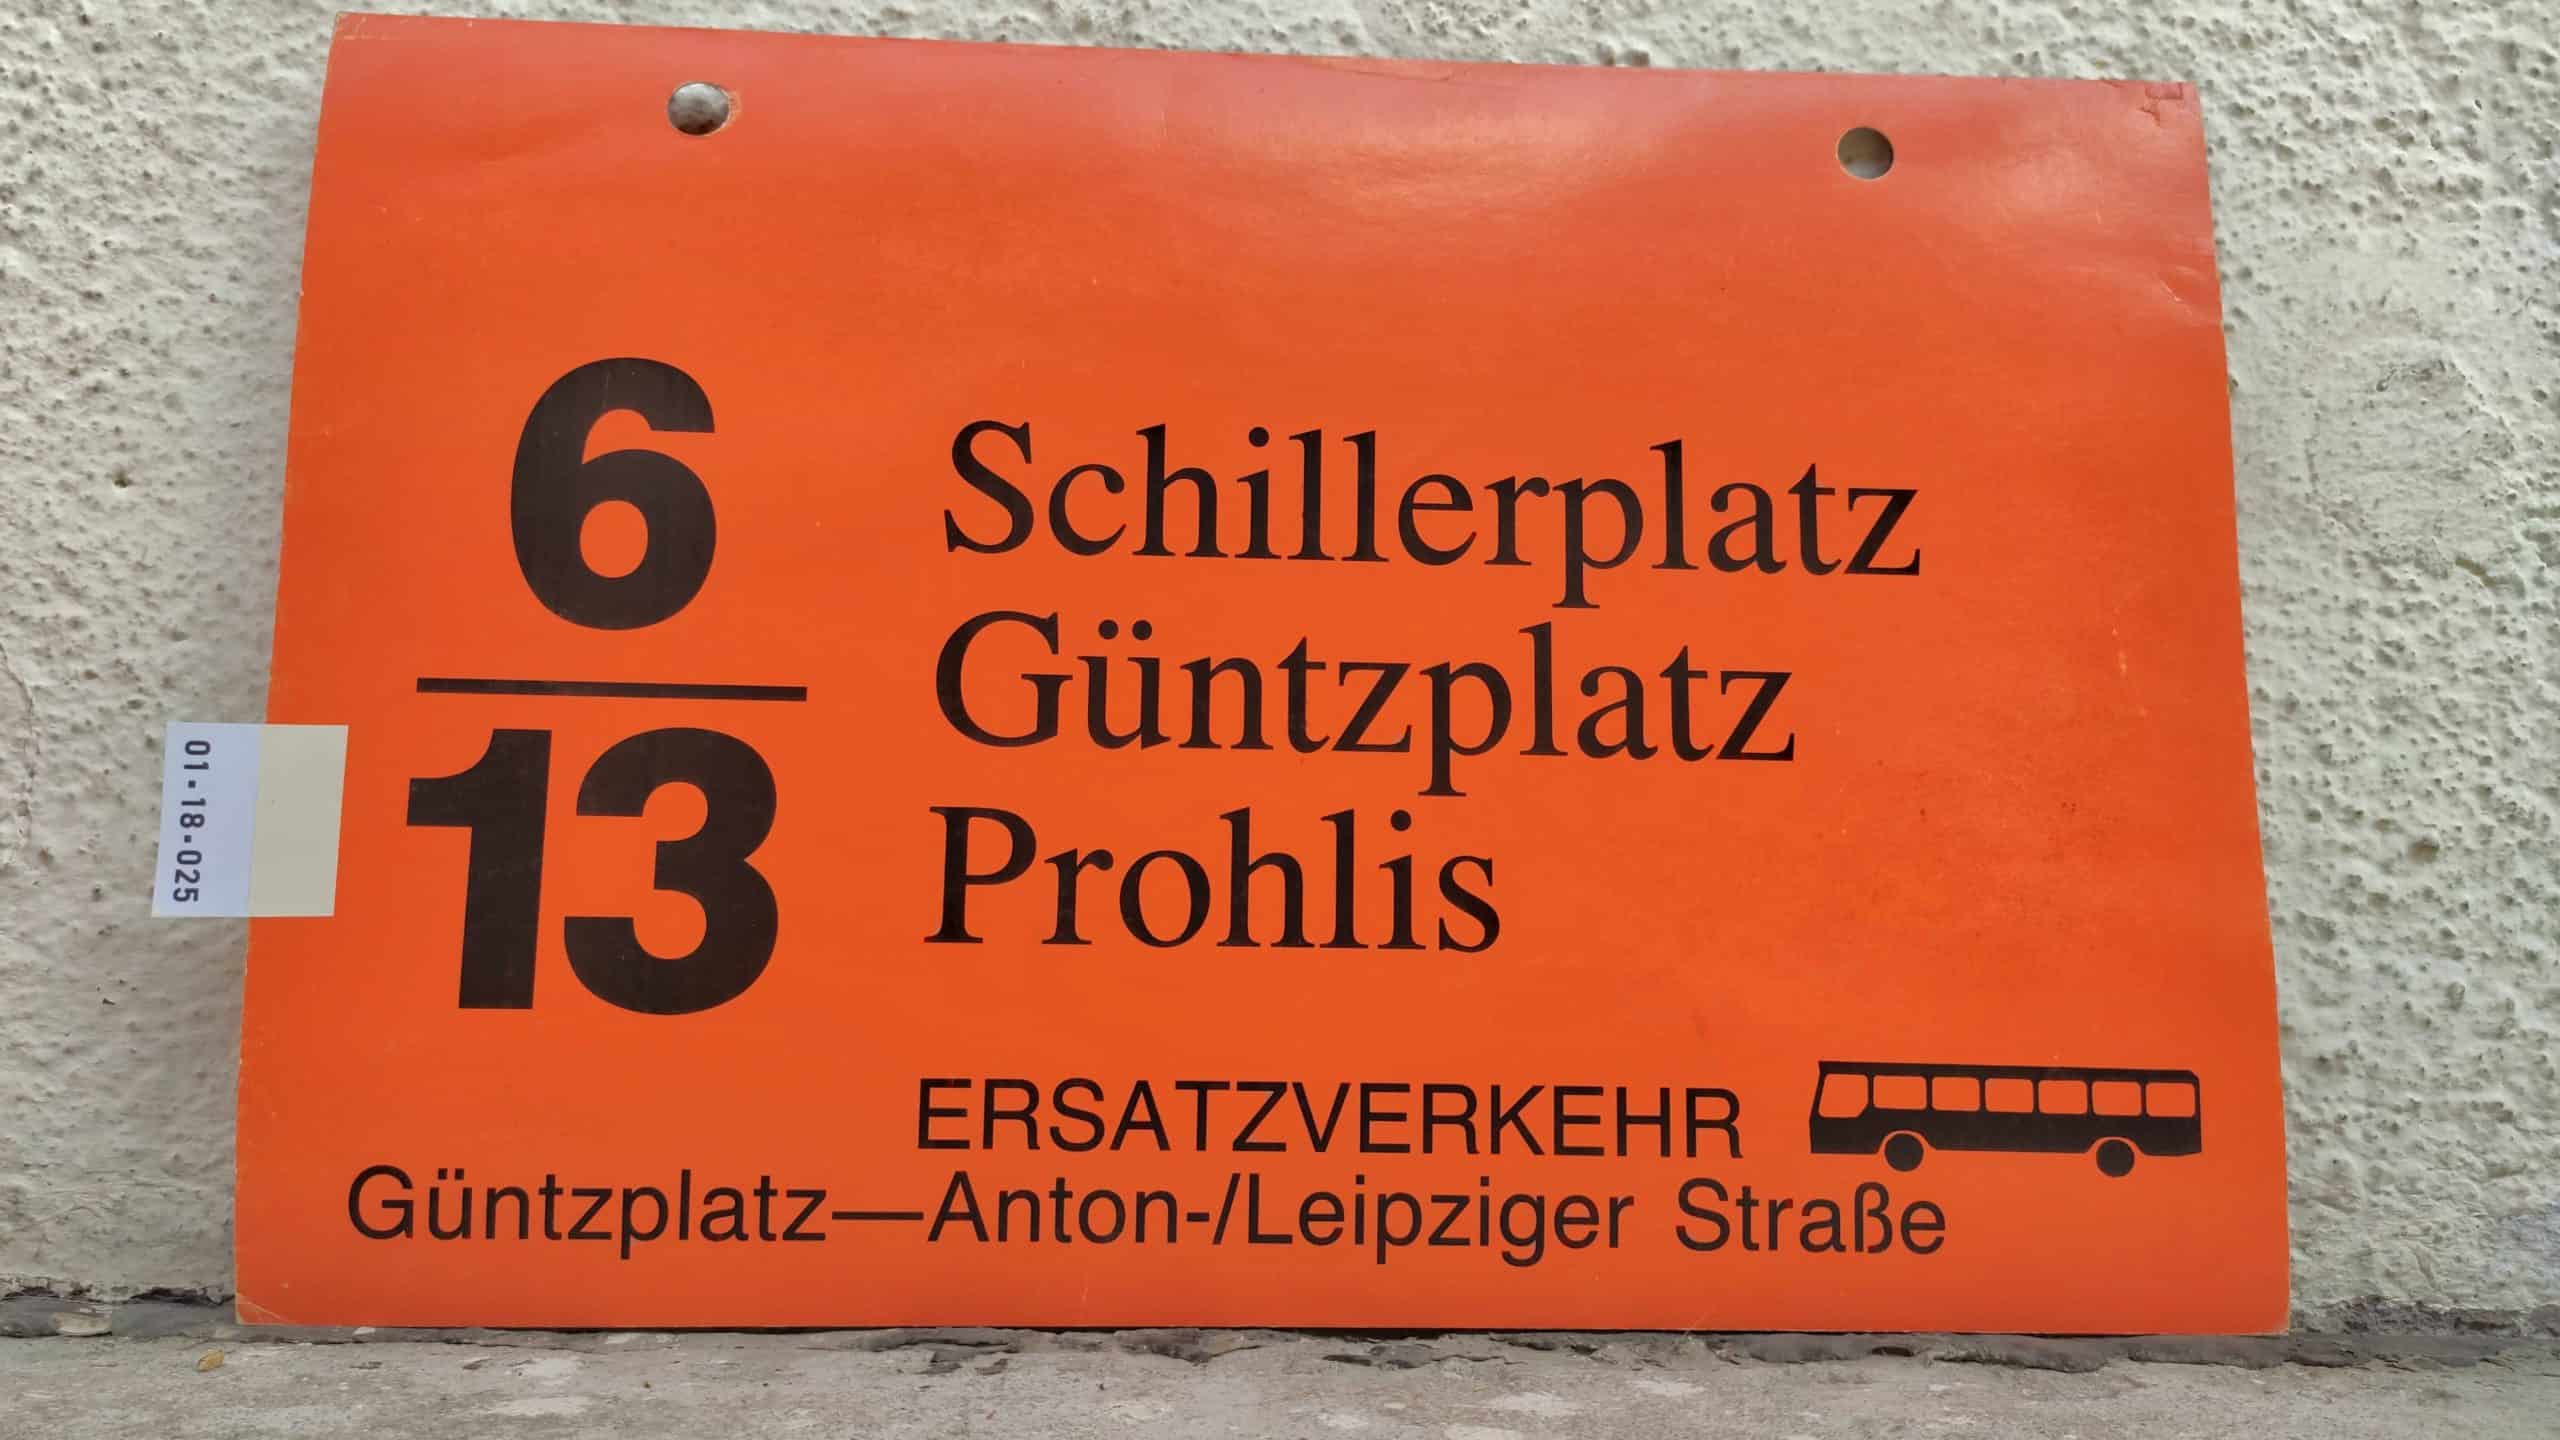 6/13 Schillerplatz – Prohlis